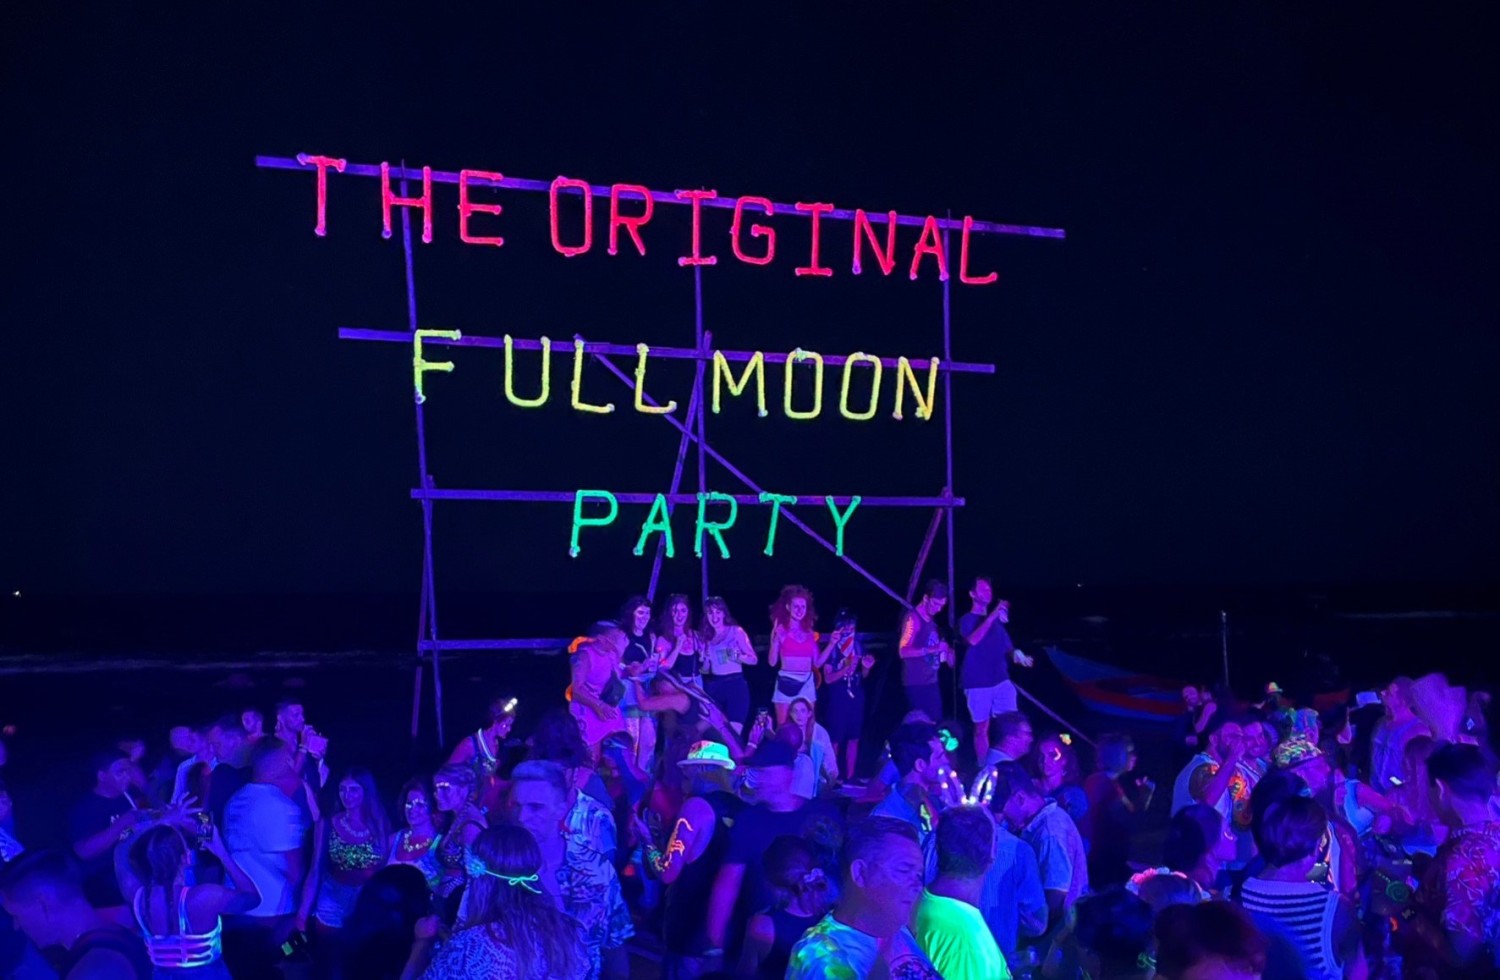 ฟูลมูนปาร์ตี้ เกาะพะงัน - Full Moon Party at Koh Pha Ngan